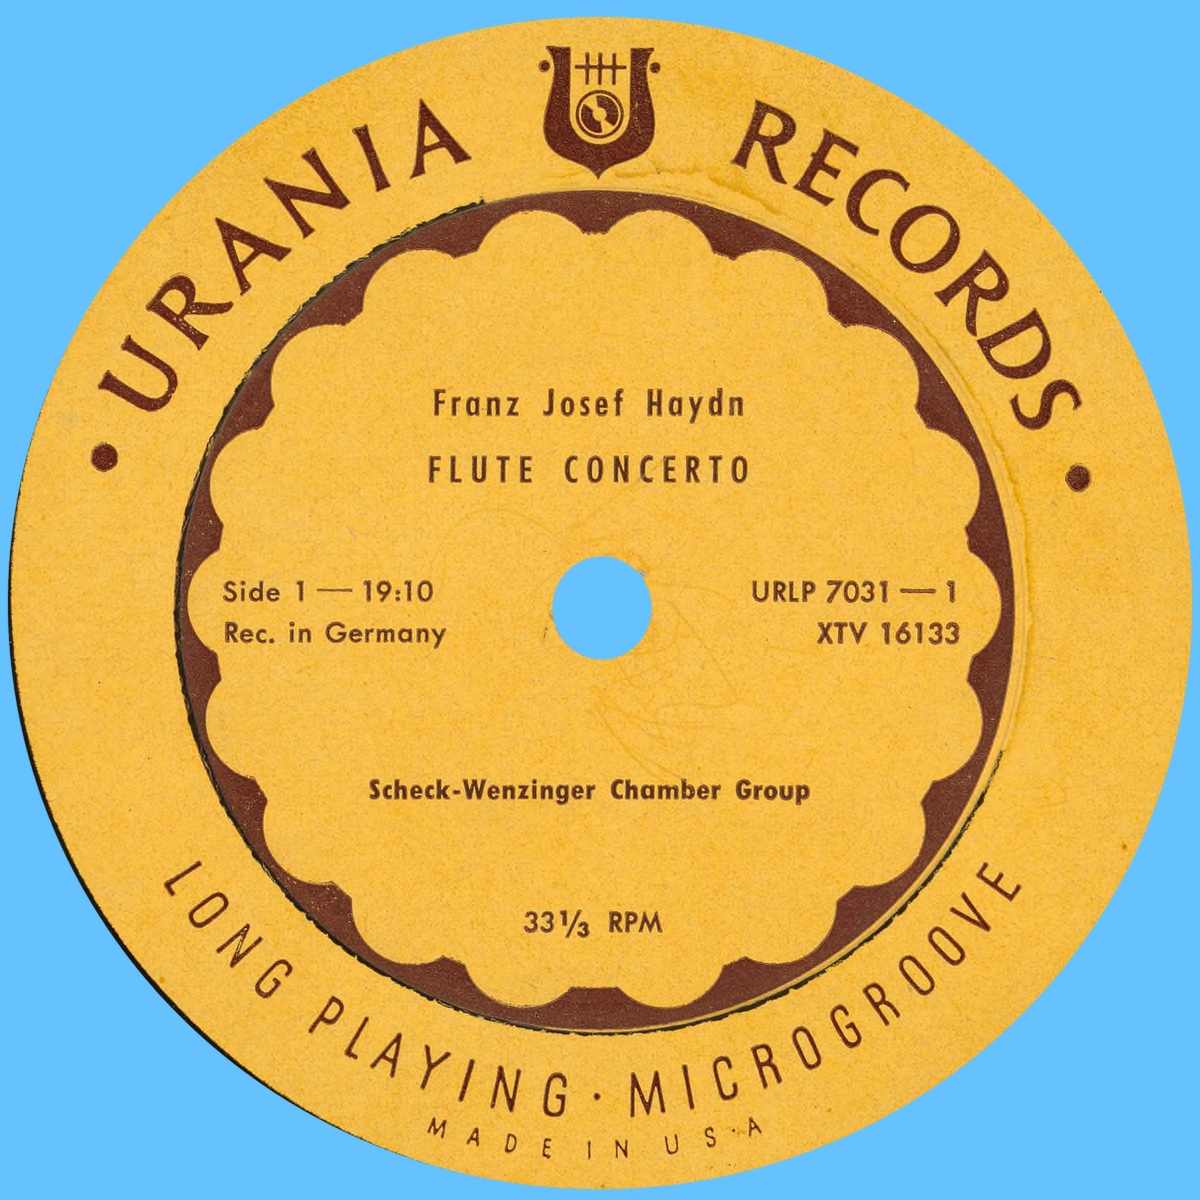 Étiquette recto du disque Urania Records URLP 7031